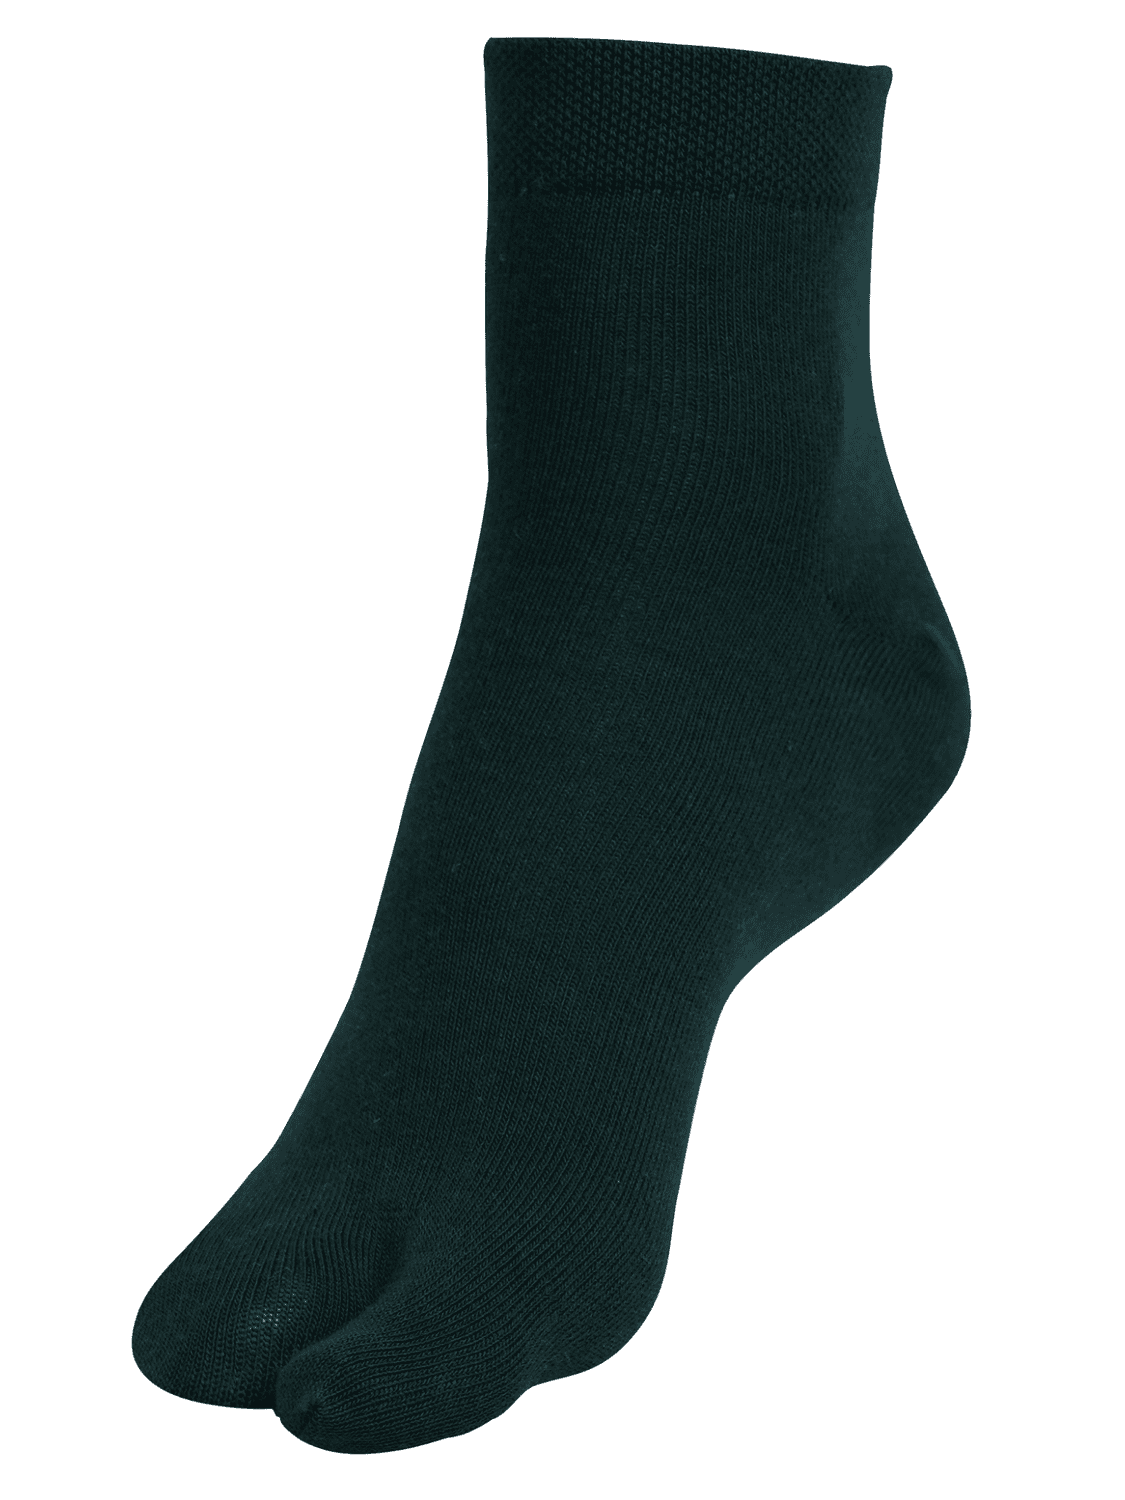 Ankle Length Thumb Socks - Bottle Green